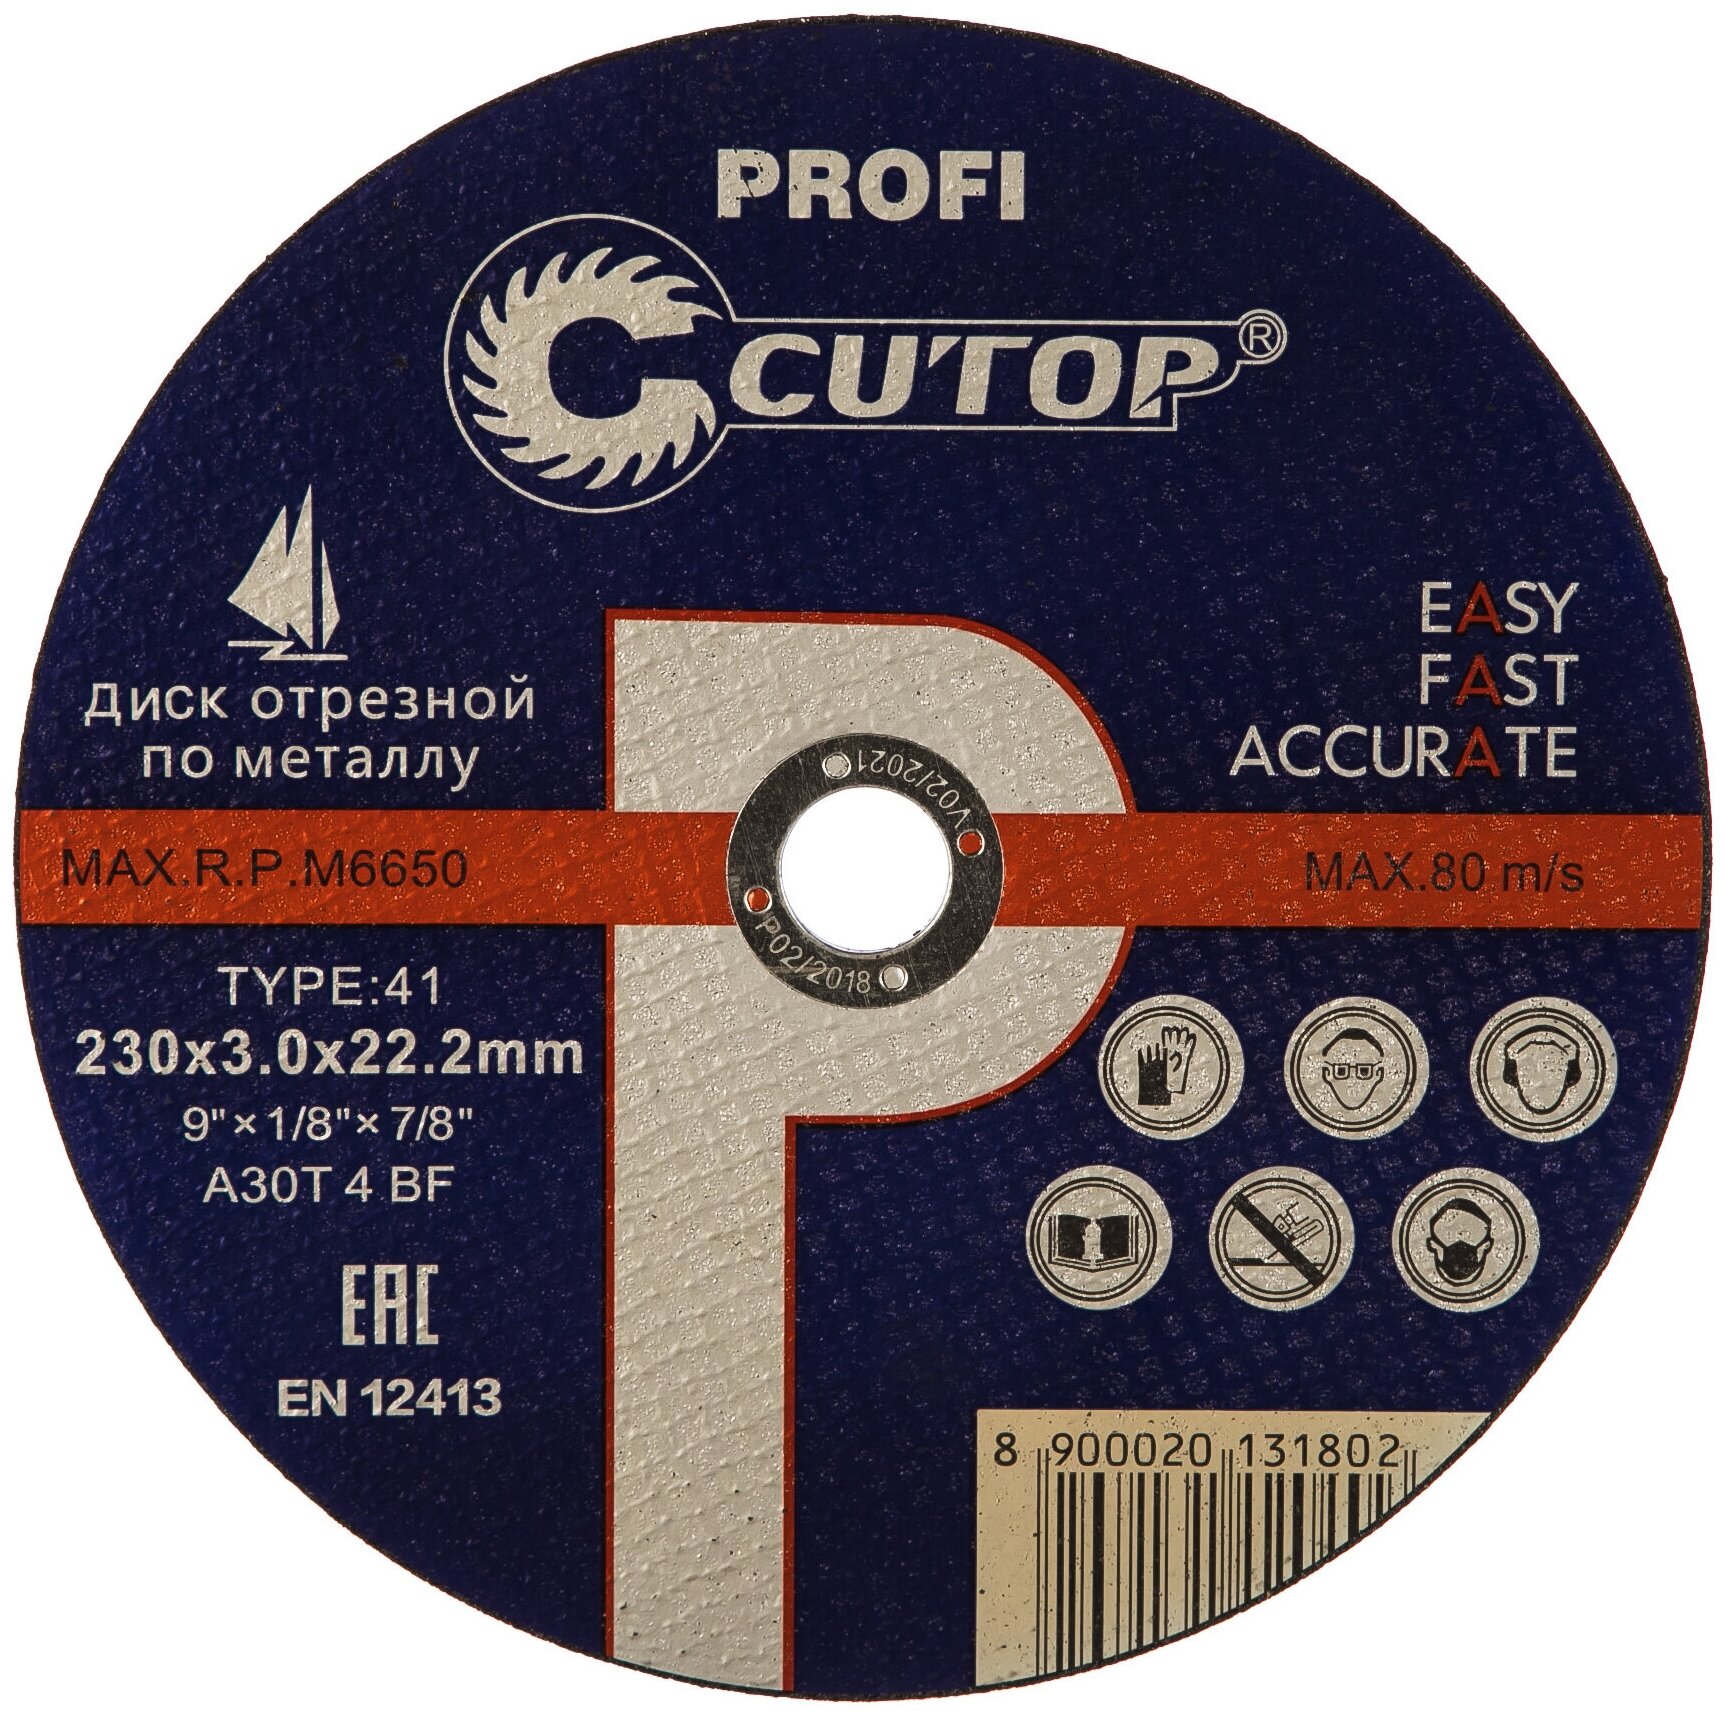 Профессиональный диск отрезной по металлу Т41-230х30х222 Profi Cutop 40007т 15692801